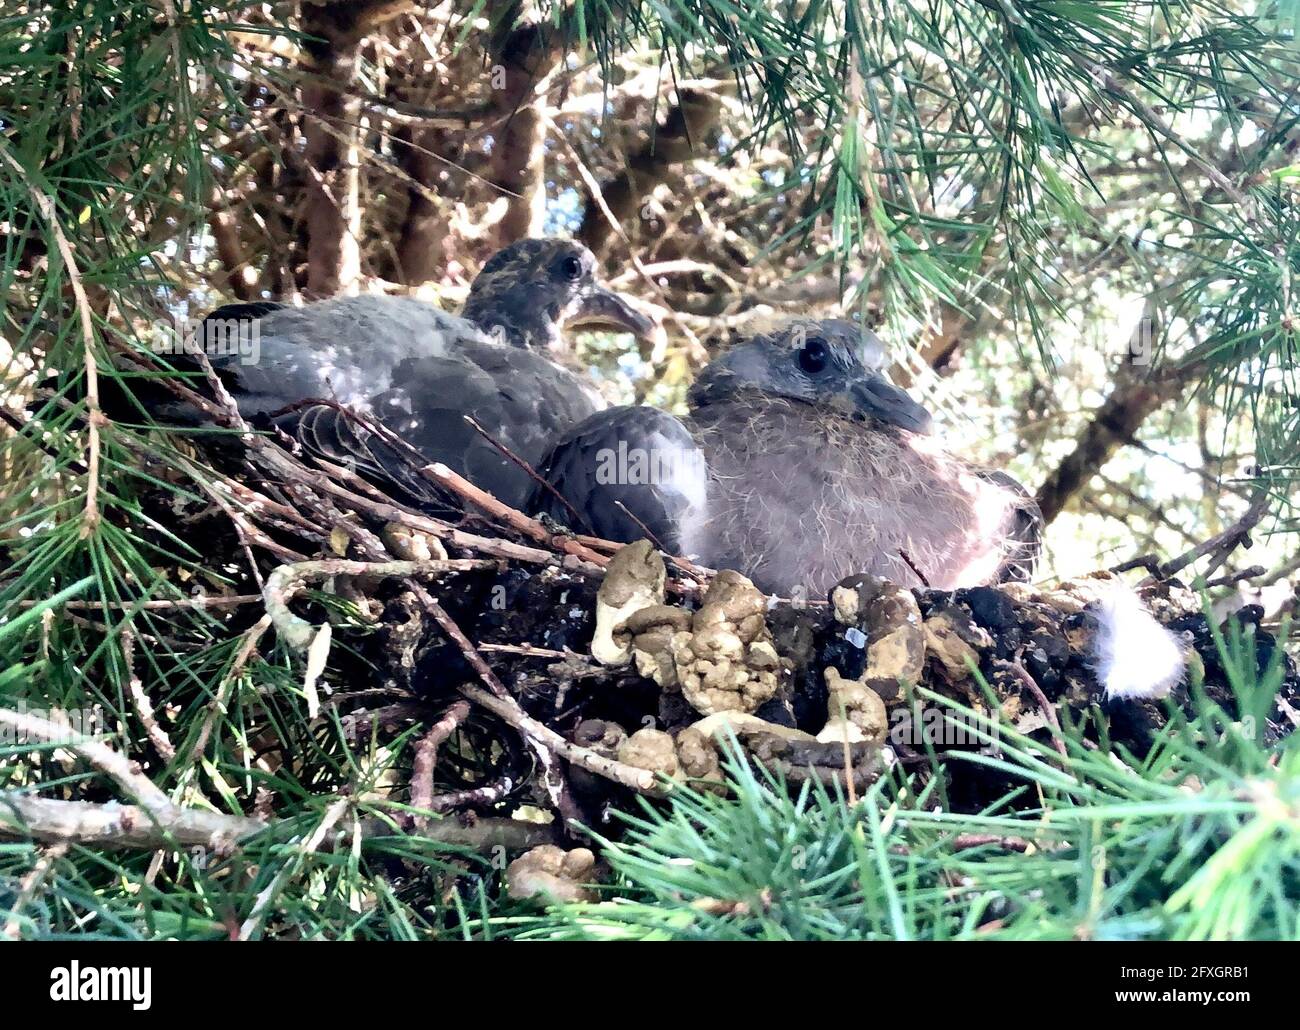 Deux jeunes Pigeons en bois dans un nid - ils sont appelés des squabs à cet âge et se nourrissent entièrement d'un régime liquide que les parents régurgitent. Banque D'Images